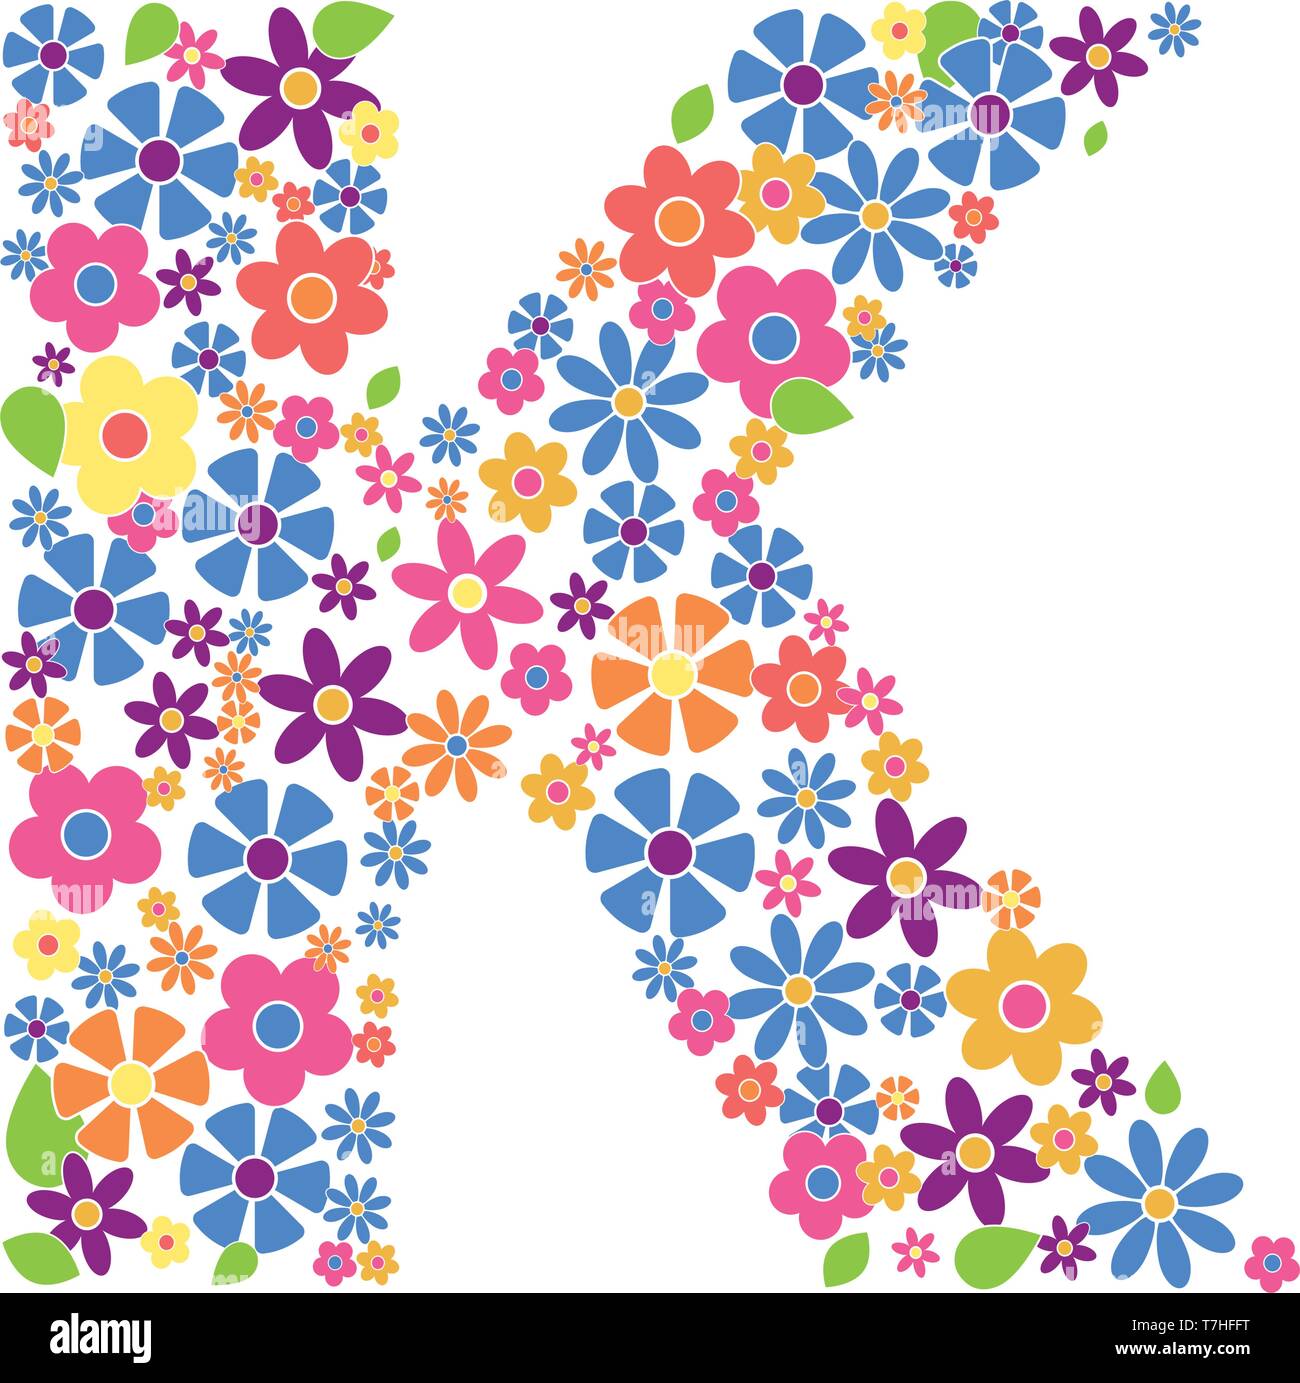 Buchstabe K gefüllt mit einer Vielzahl von bunten Blumen auf weißem Hintergrund Vektor-illustration isoliert Stock Vektor